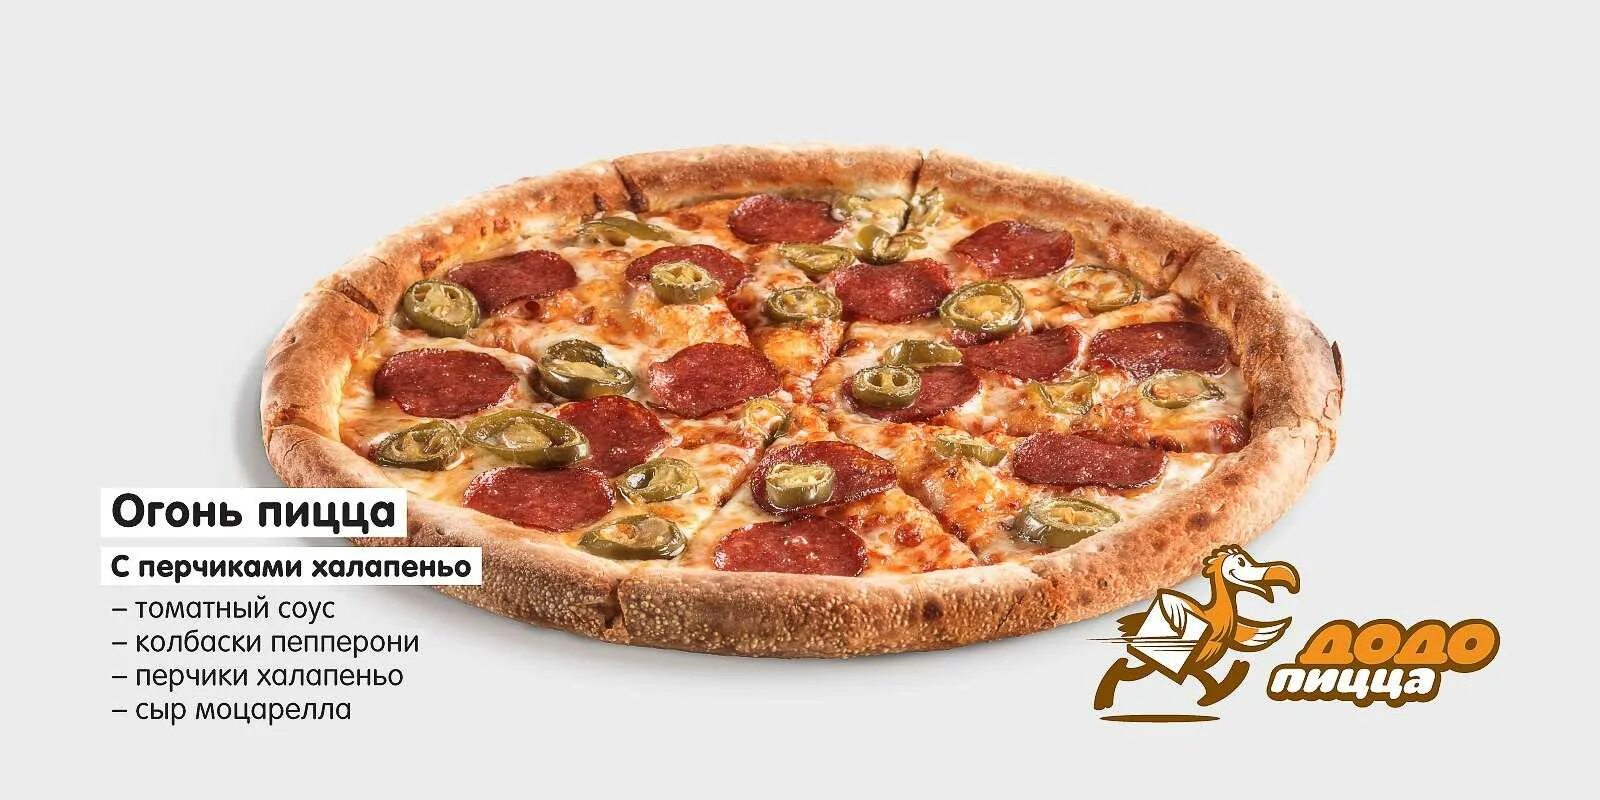 Пепперони Додо. Пицца пепперони 25 см. Халапеньо Додо пицца. Пицца пепперони с халапеньо. Доставка еды муром